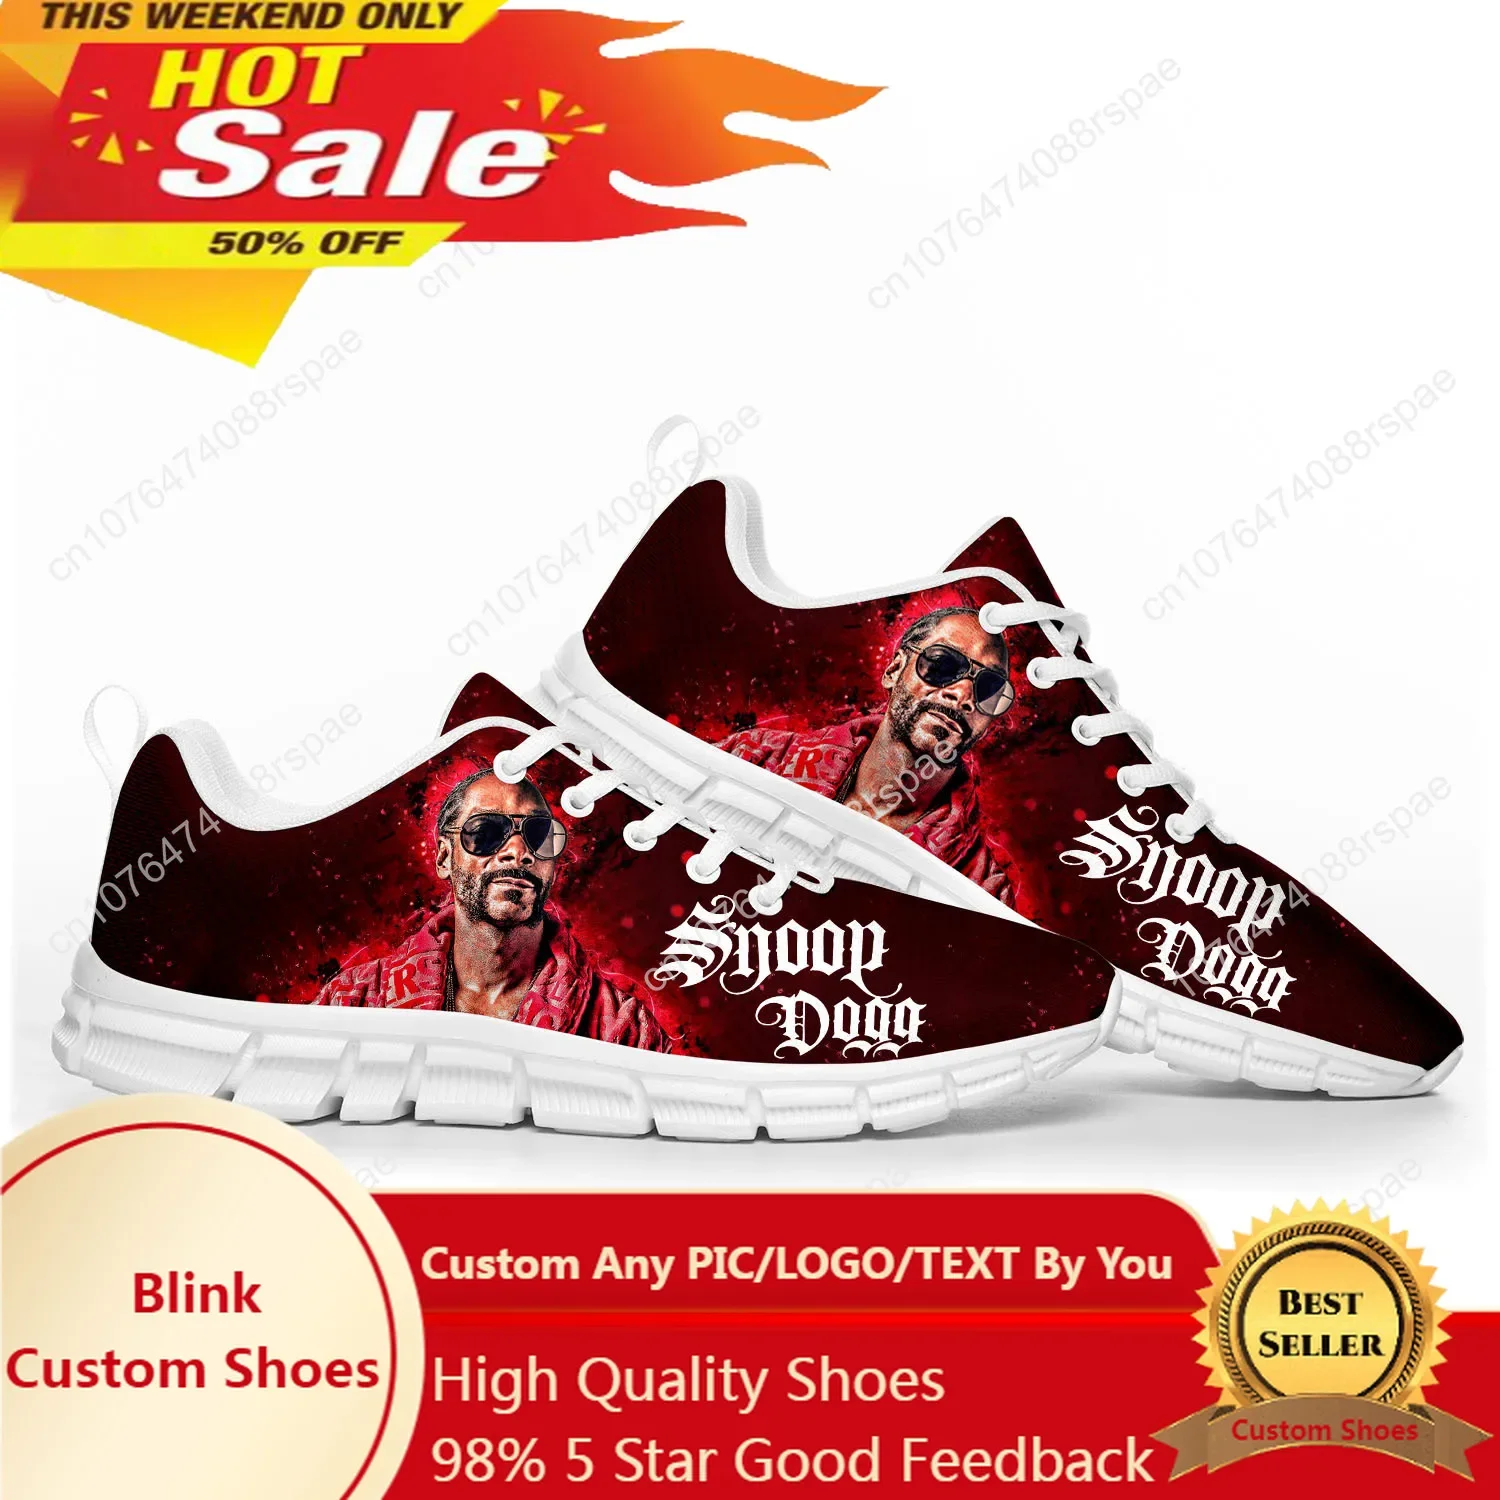 

Спортивная обувь Snoop Dogg Rap для мужчин, женщин, подростков, детей, индивидуальные кроссовки, Повседневная индивидуальная обувь высокого качества для пар